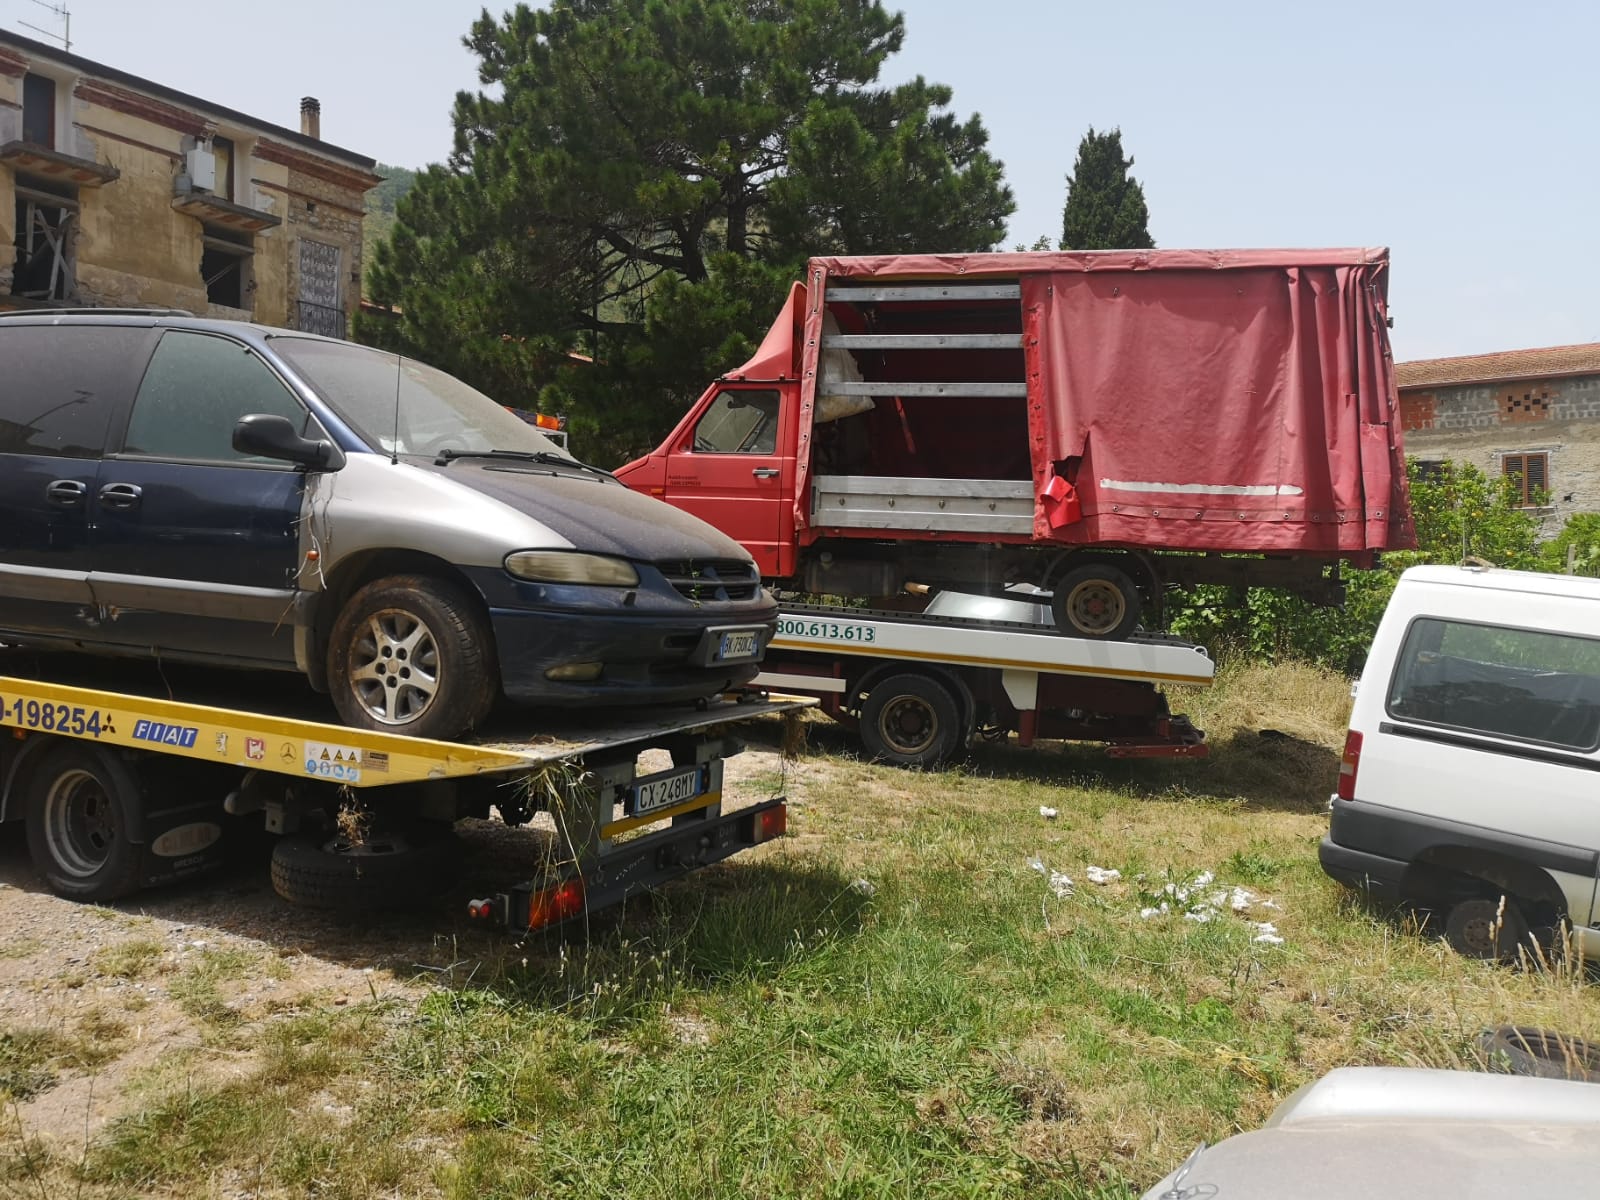 Camerota, veicoli abbandonati: 3 rimozioni con confisca